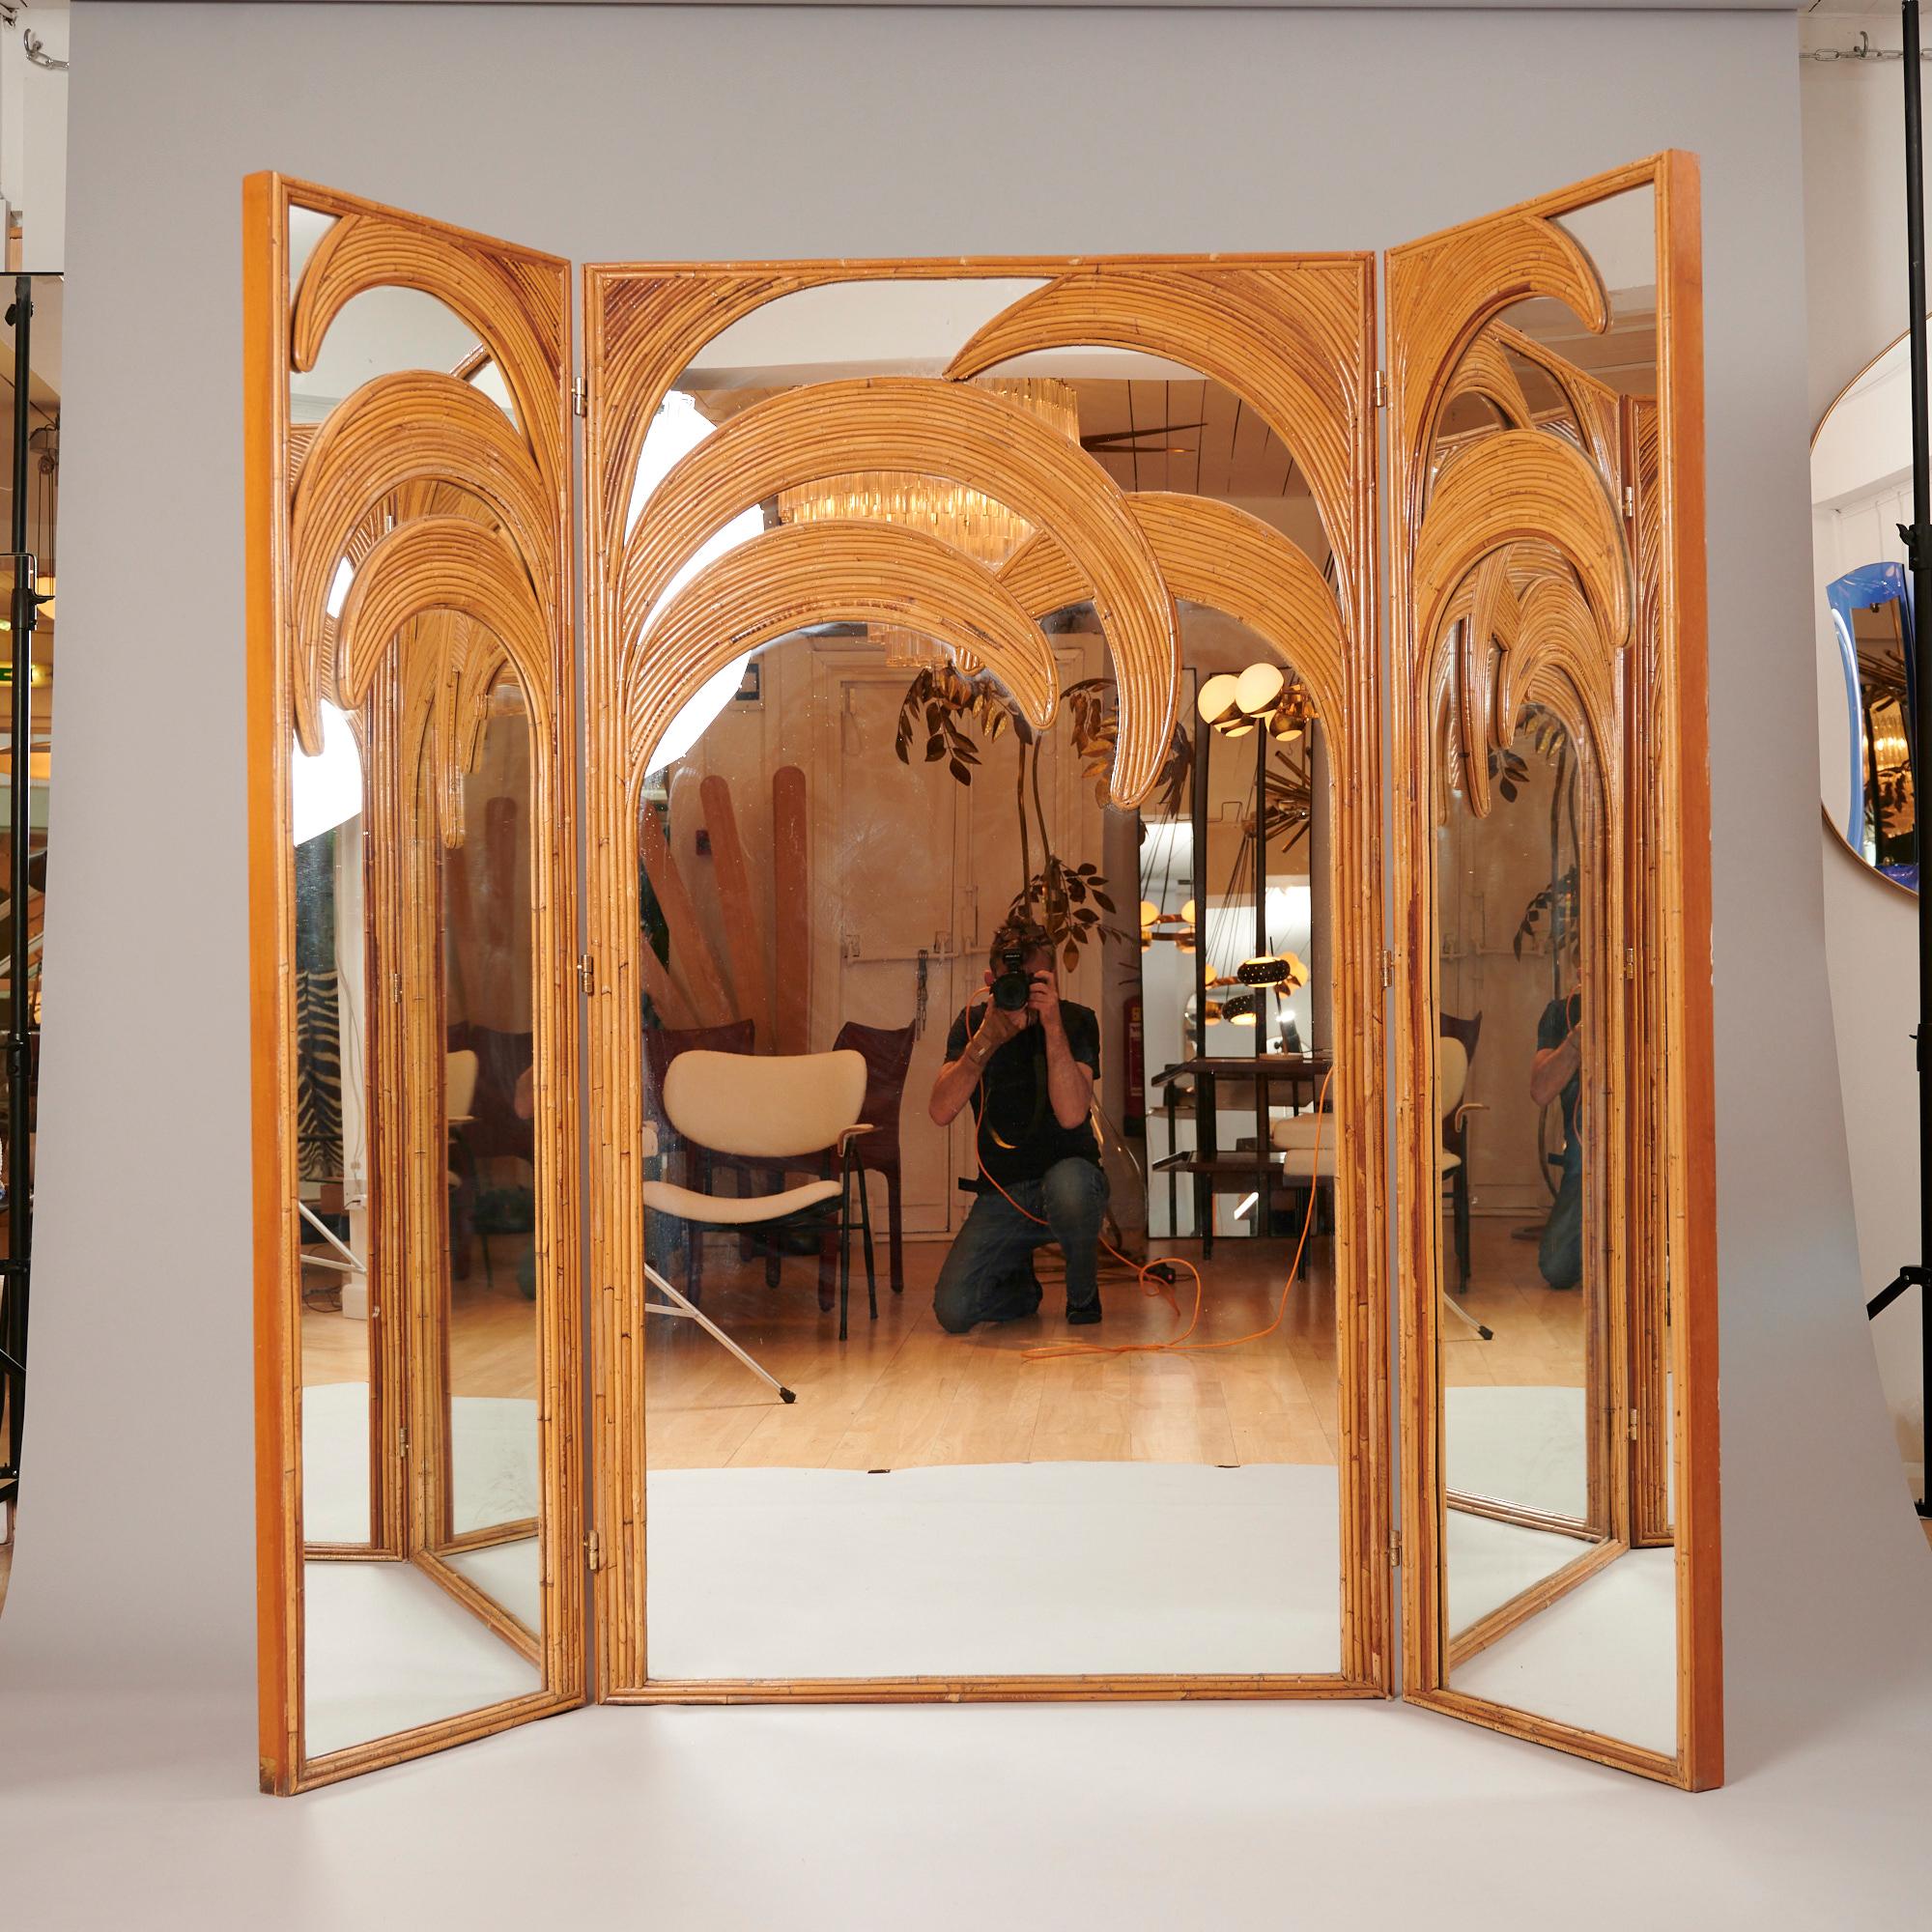 Original 1970er Jahre Vivai del Sud Spiegelbildschirm. 

Kann als Bodenleinwand oder als an der Wand montierter Triptychon-Spiegel verwendet werden. 

Wunderschöne Patina auf Bambus. In ausgezeichnetem Zustand.